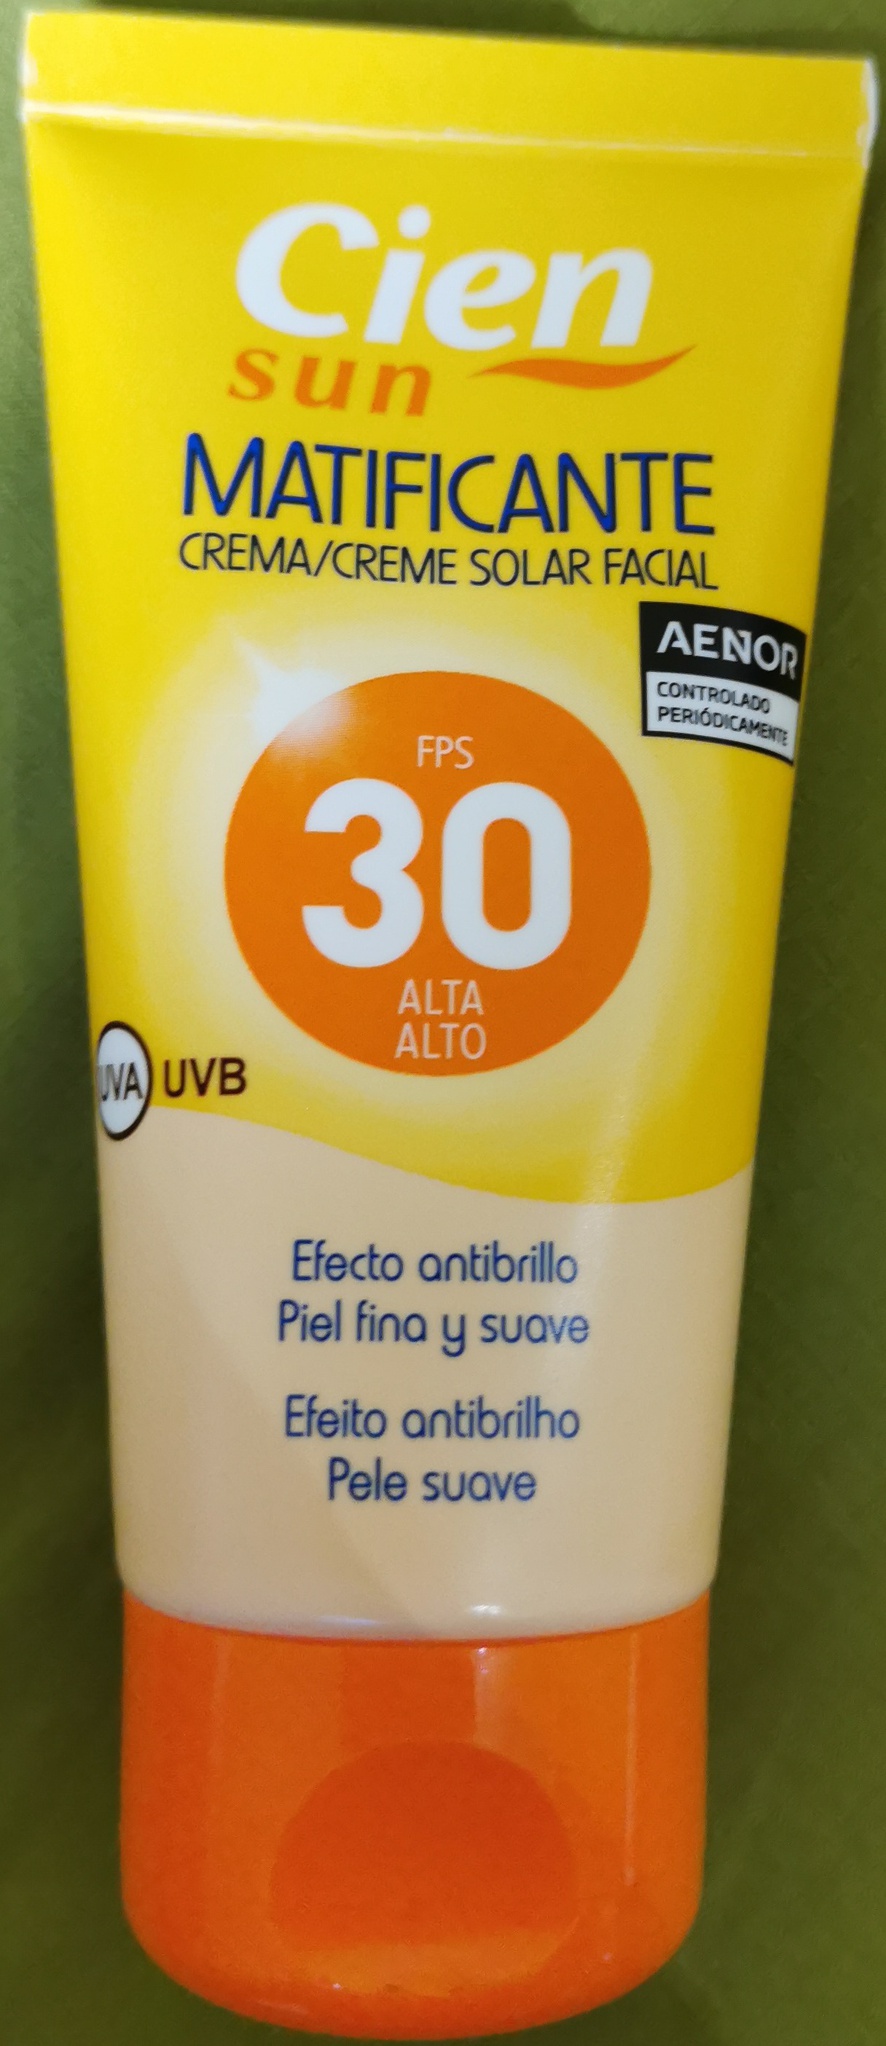 Cien Facial Sunscreen (Mattifying) SPF 30